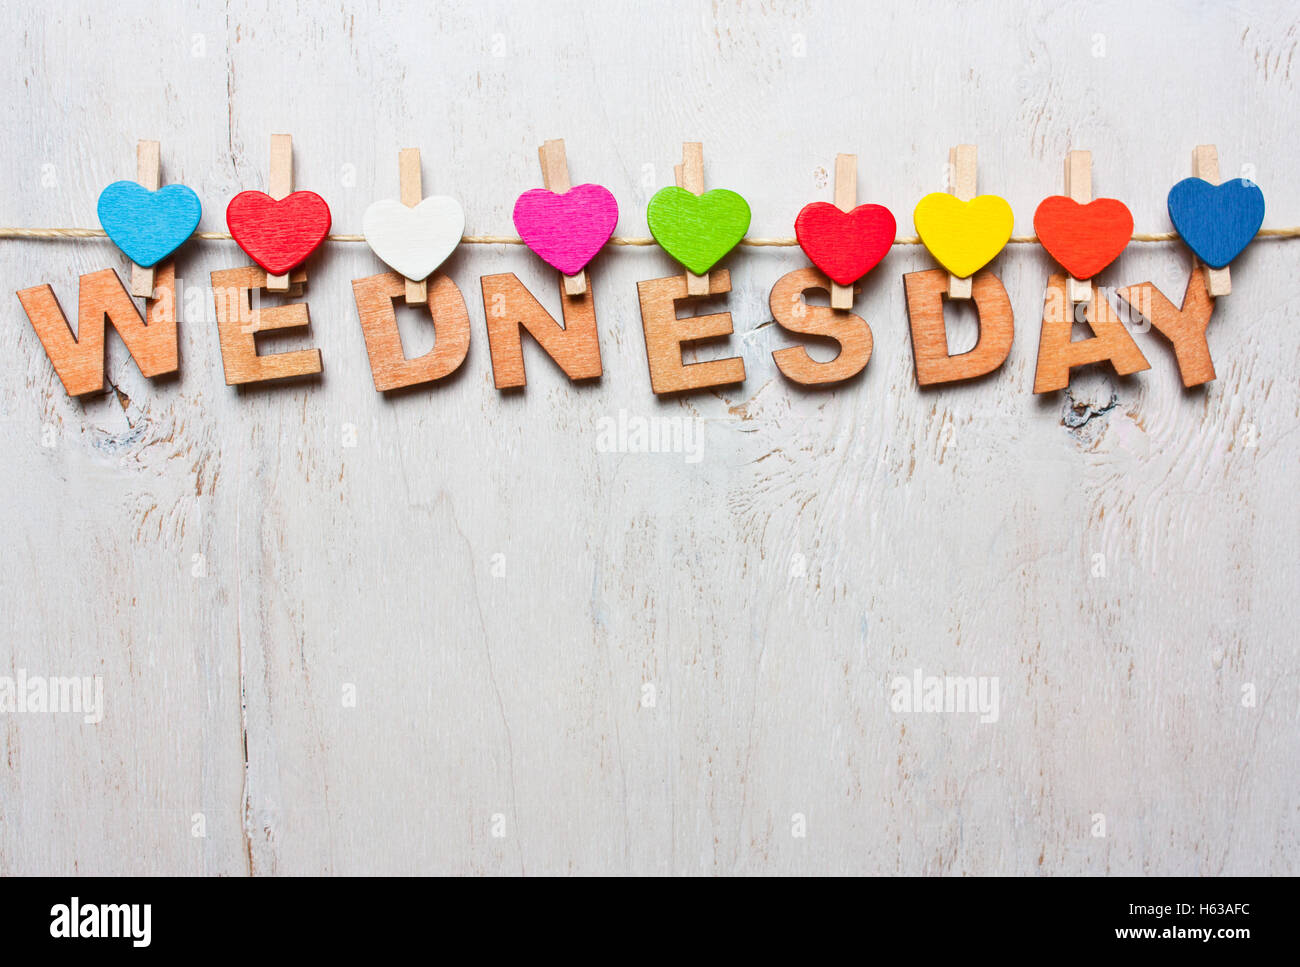 Mercoledì parola da lettere di legno con clothespins colorati su un bianco sullo sfondo di legno Foto Stock